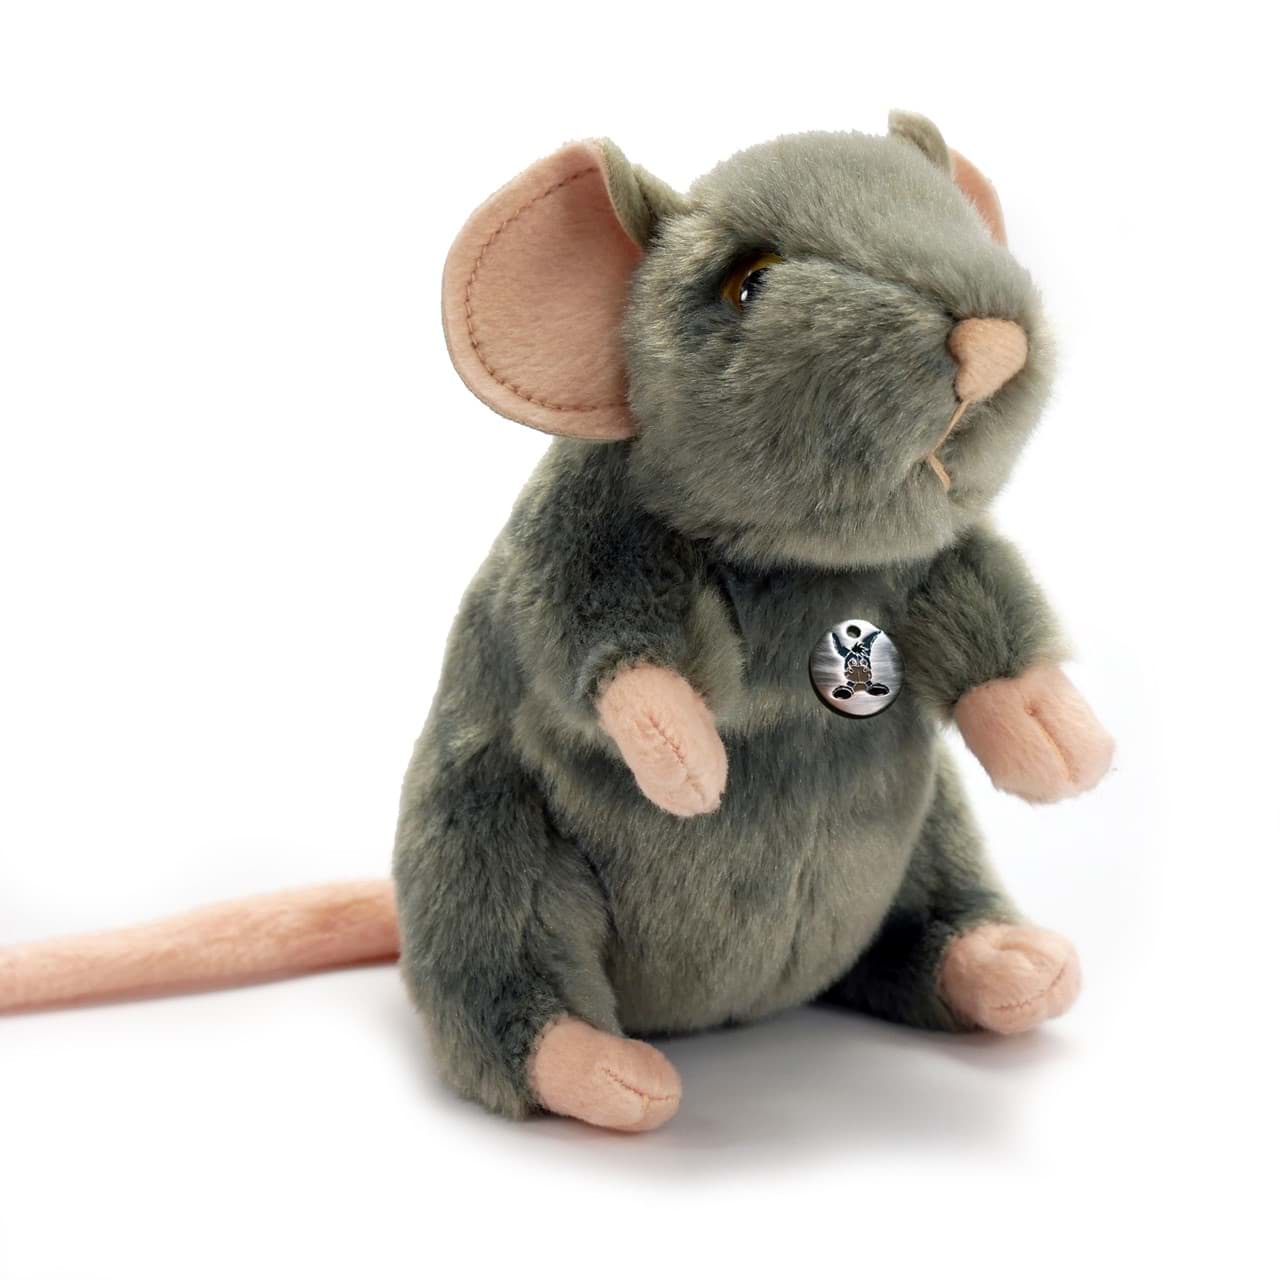 Maus VANILLA Ratte weiss 14 cm sitzend Plüschtier Plüschmaus Plüschratte 